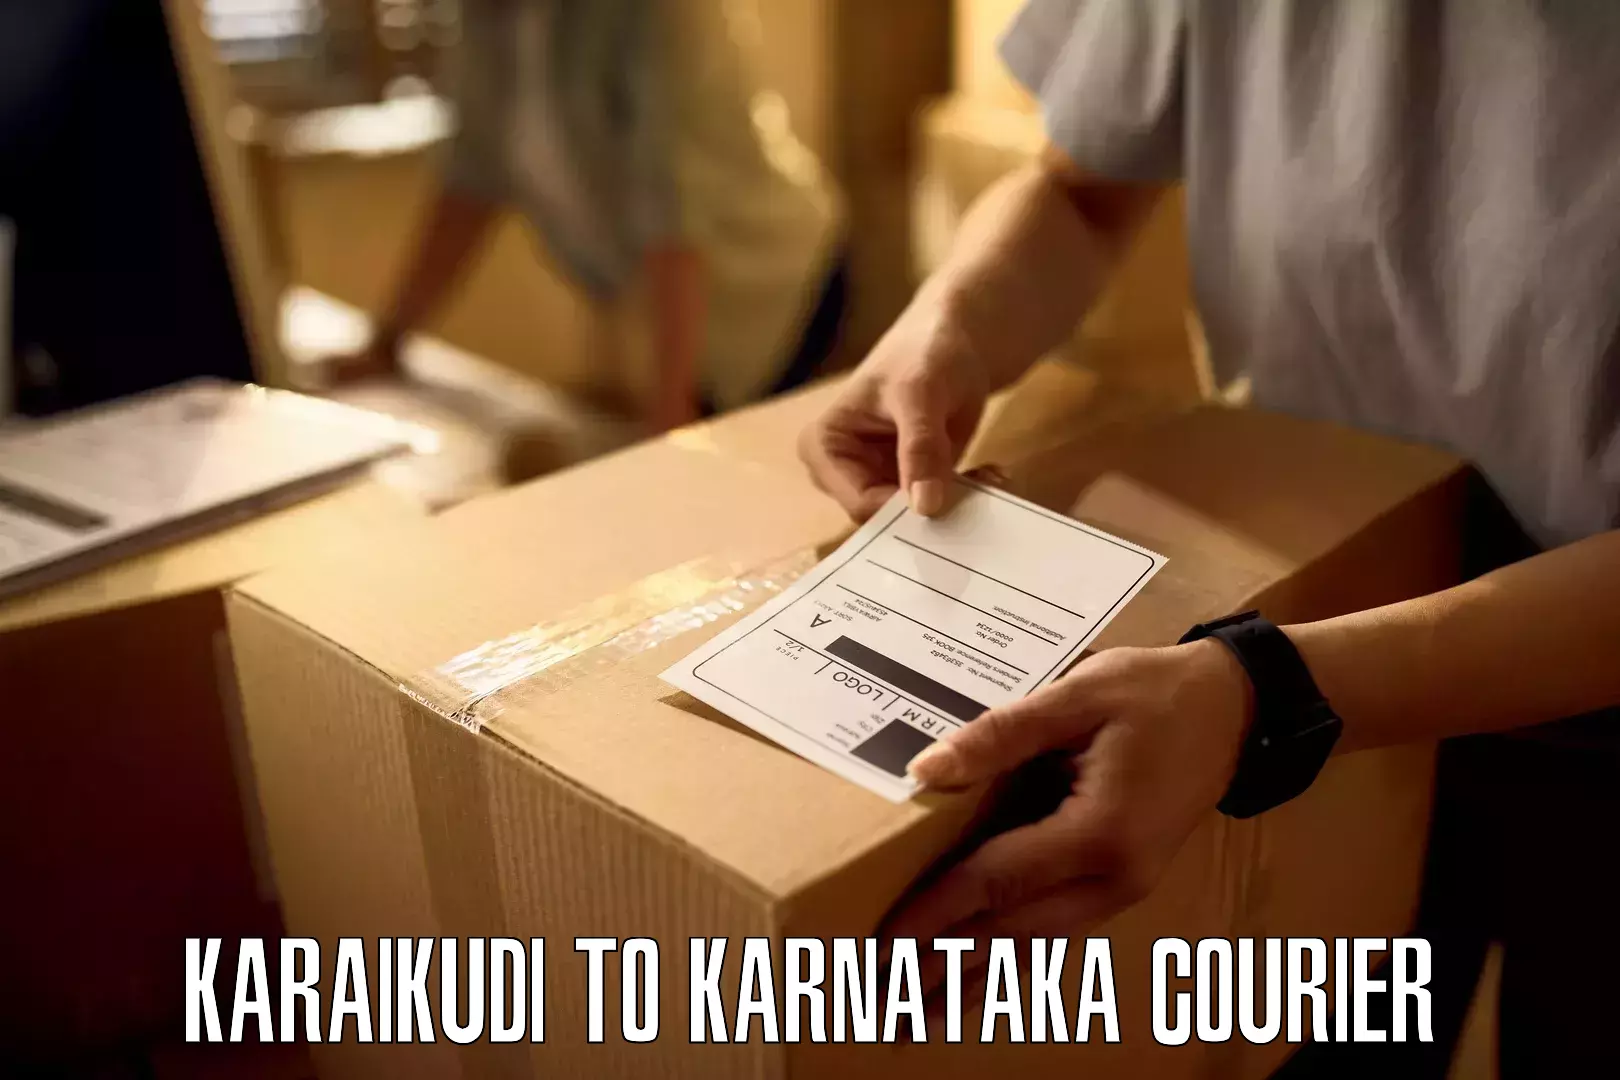 Sustainable courier practices Karaikudi to Ankola